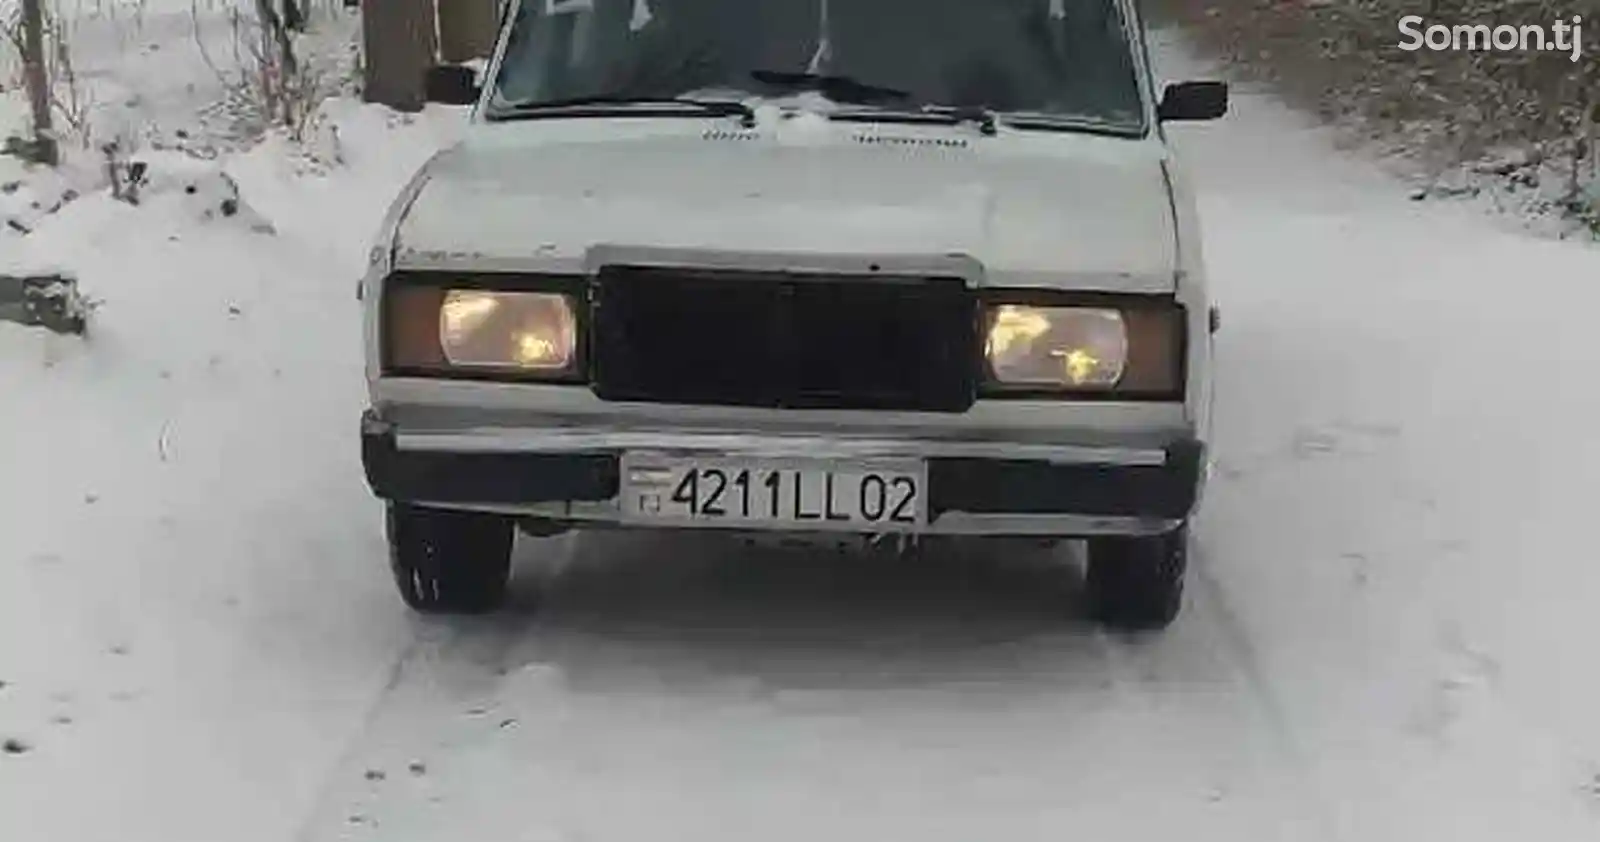 ВАЗ 2107, 1993-3